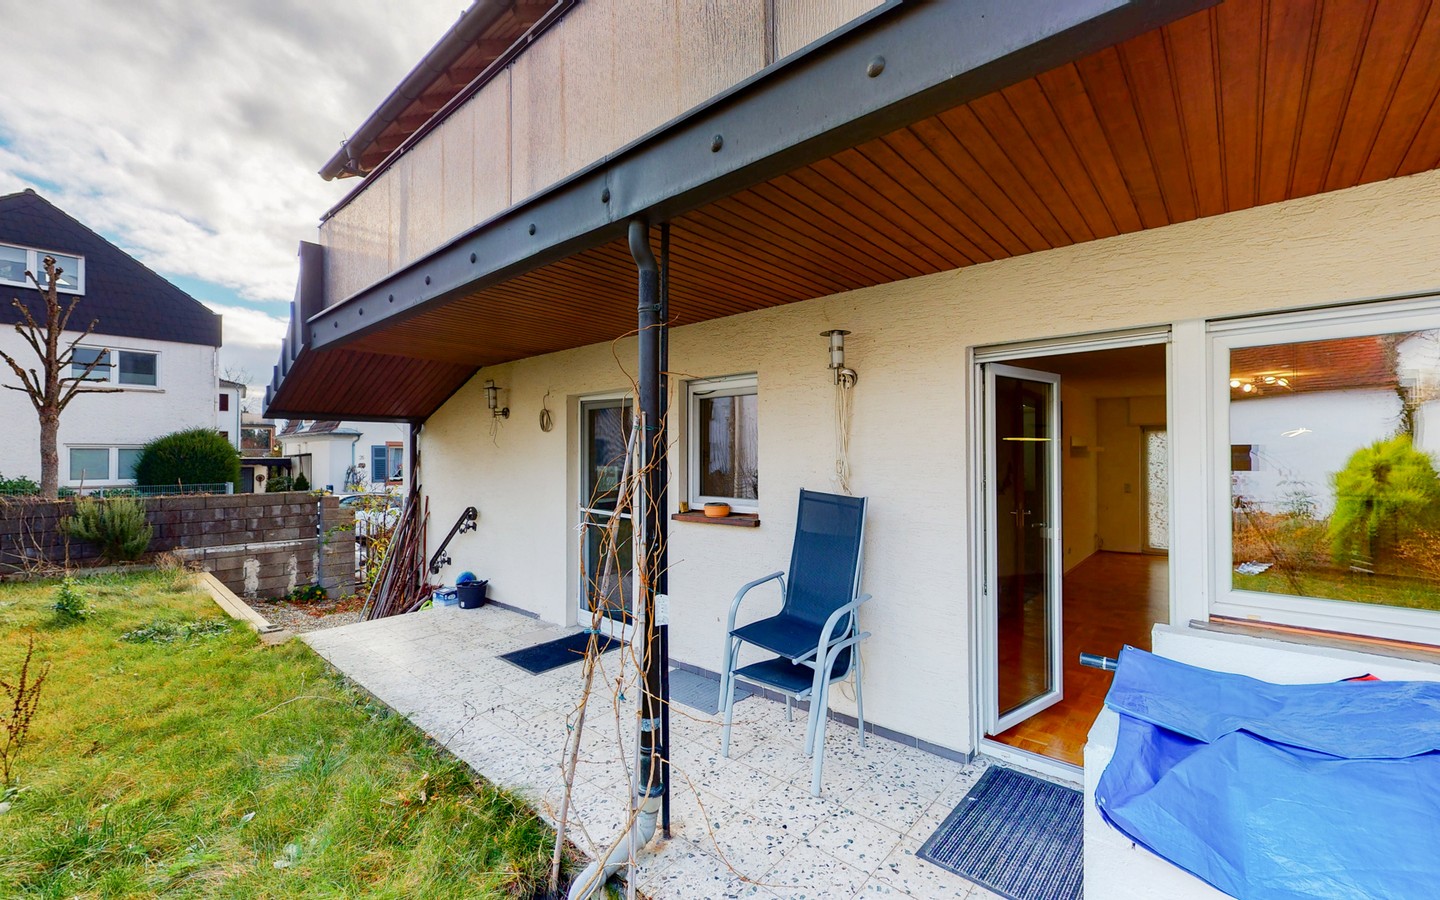 Terrasse - Modernisiertes Einfamilienhaus mit Garten in familienfreundlicher Wohnlage von Hemsbach